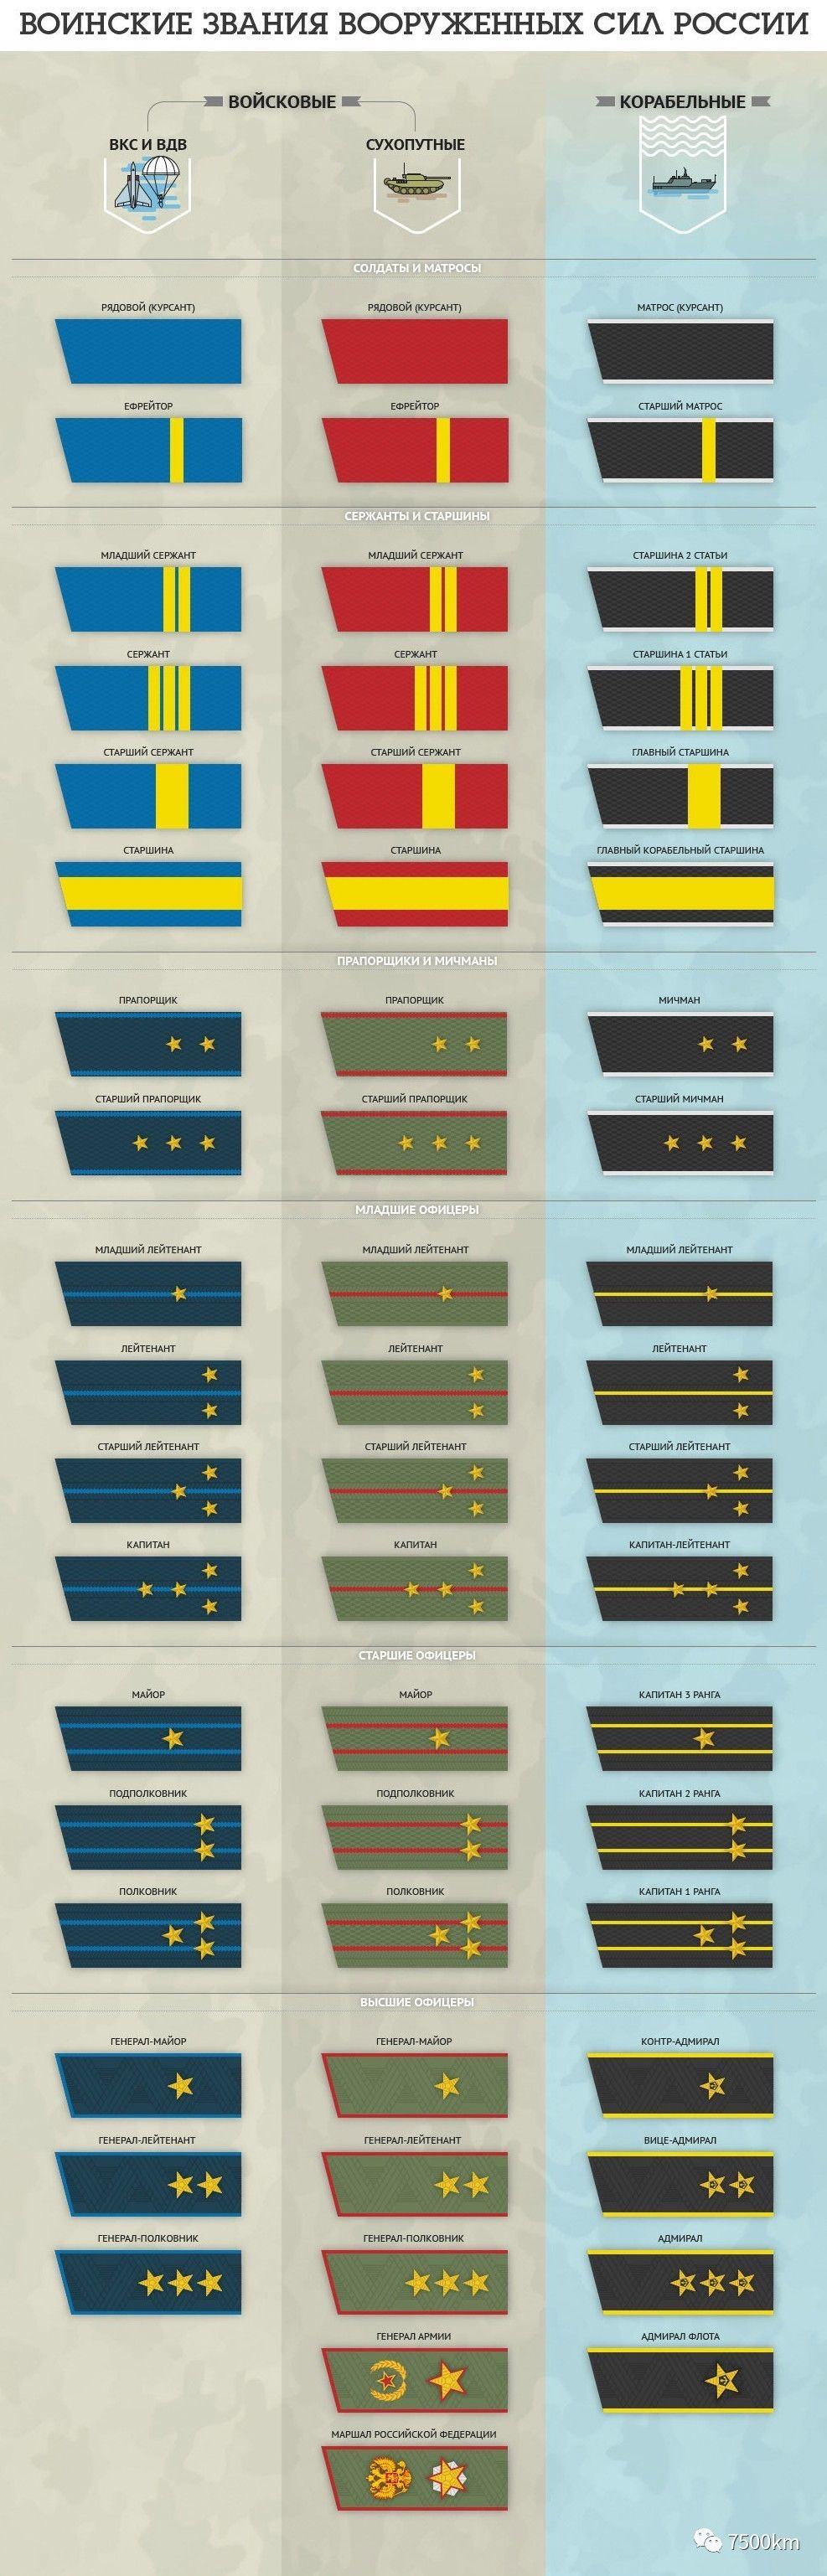 其中空天军为蓝色,陆军为红色,海军为黑色(边白色),不同军衔有不同